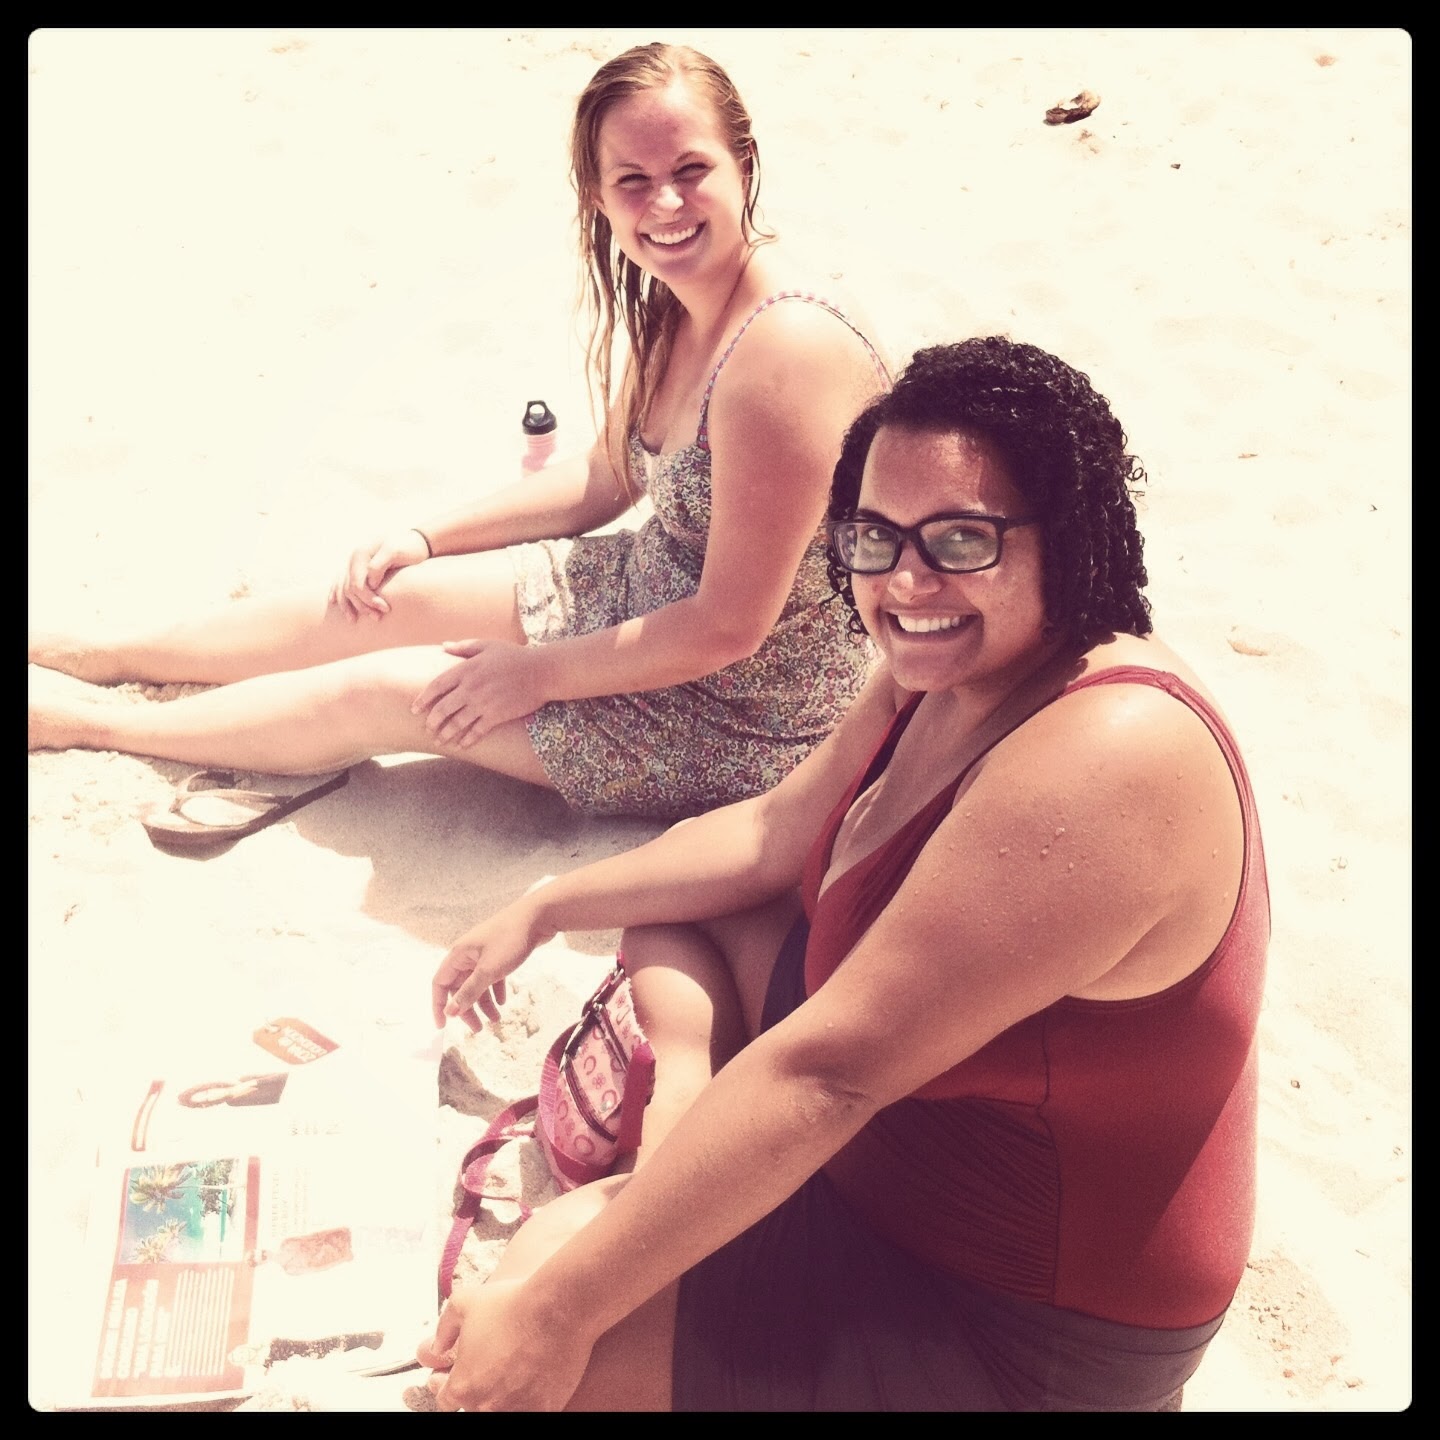 Beach days with Courtney